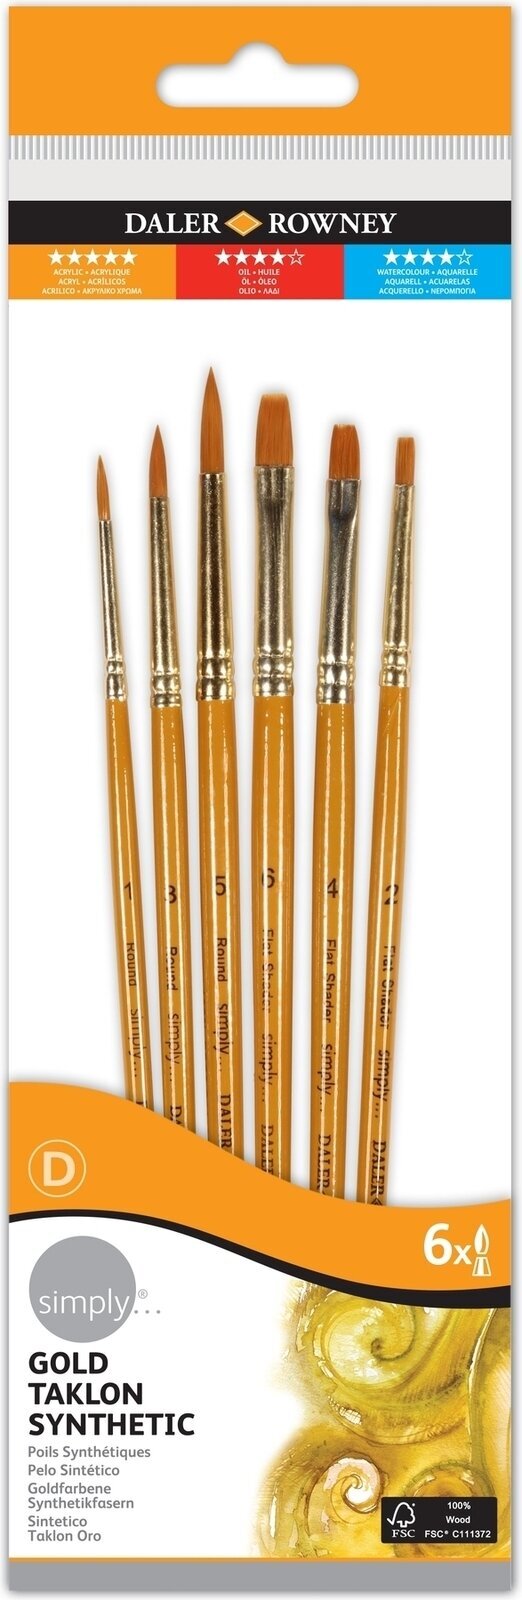 Paint Brush Daler Rowney Simply Acrylic Brush Gold Taklon Synthetic Set of Brushes 1 pc